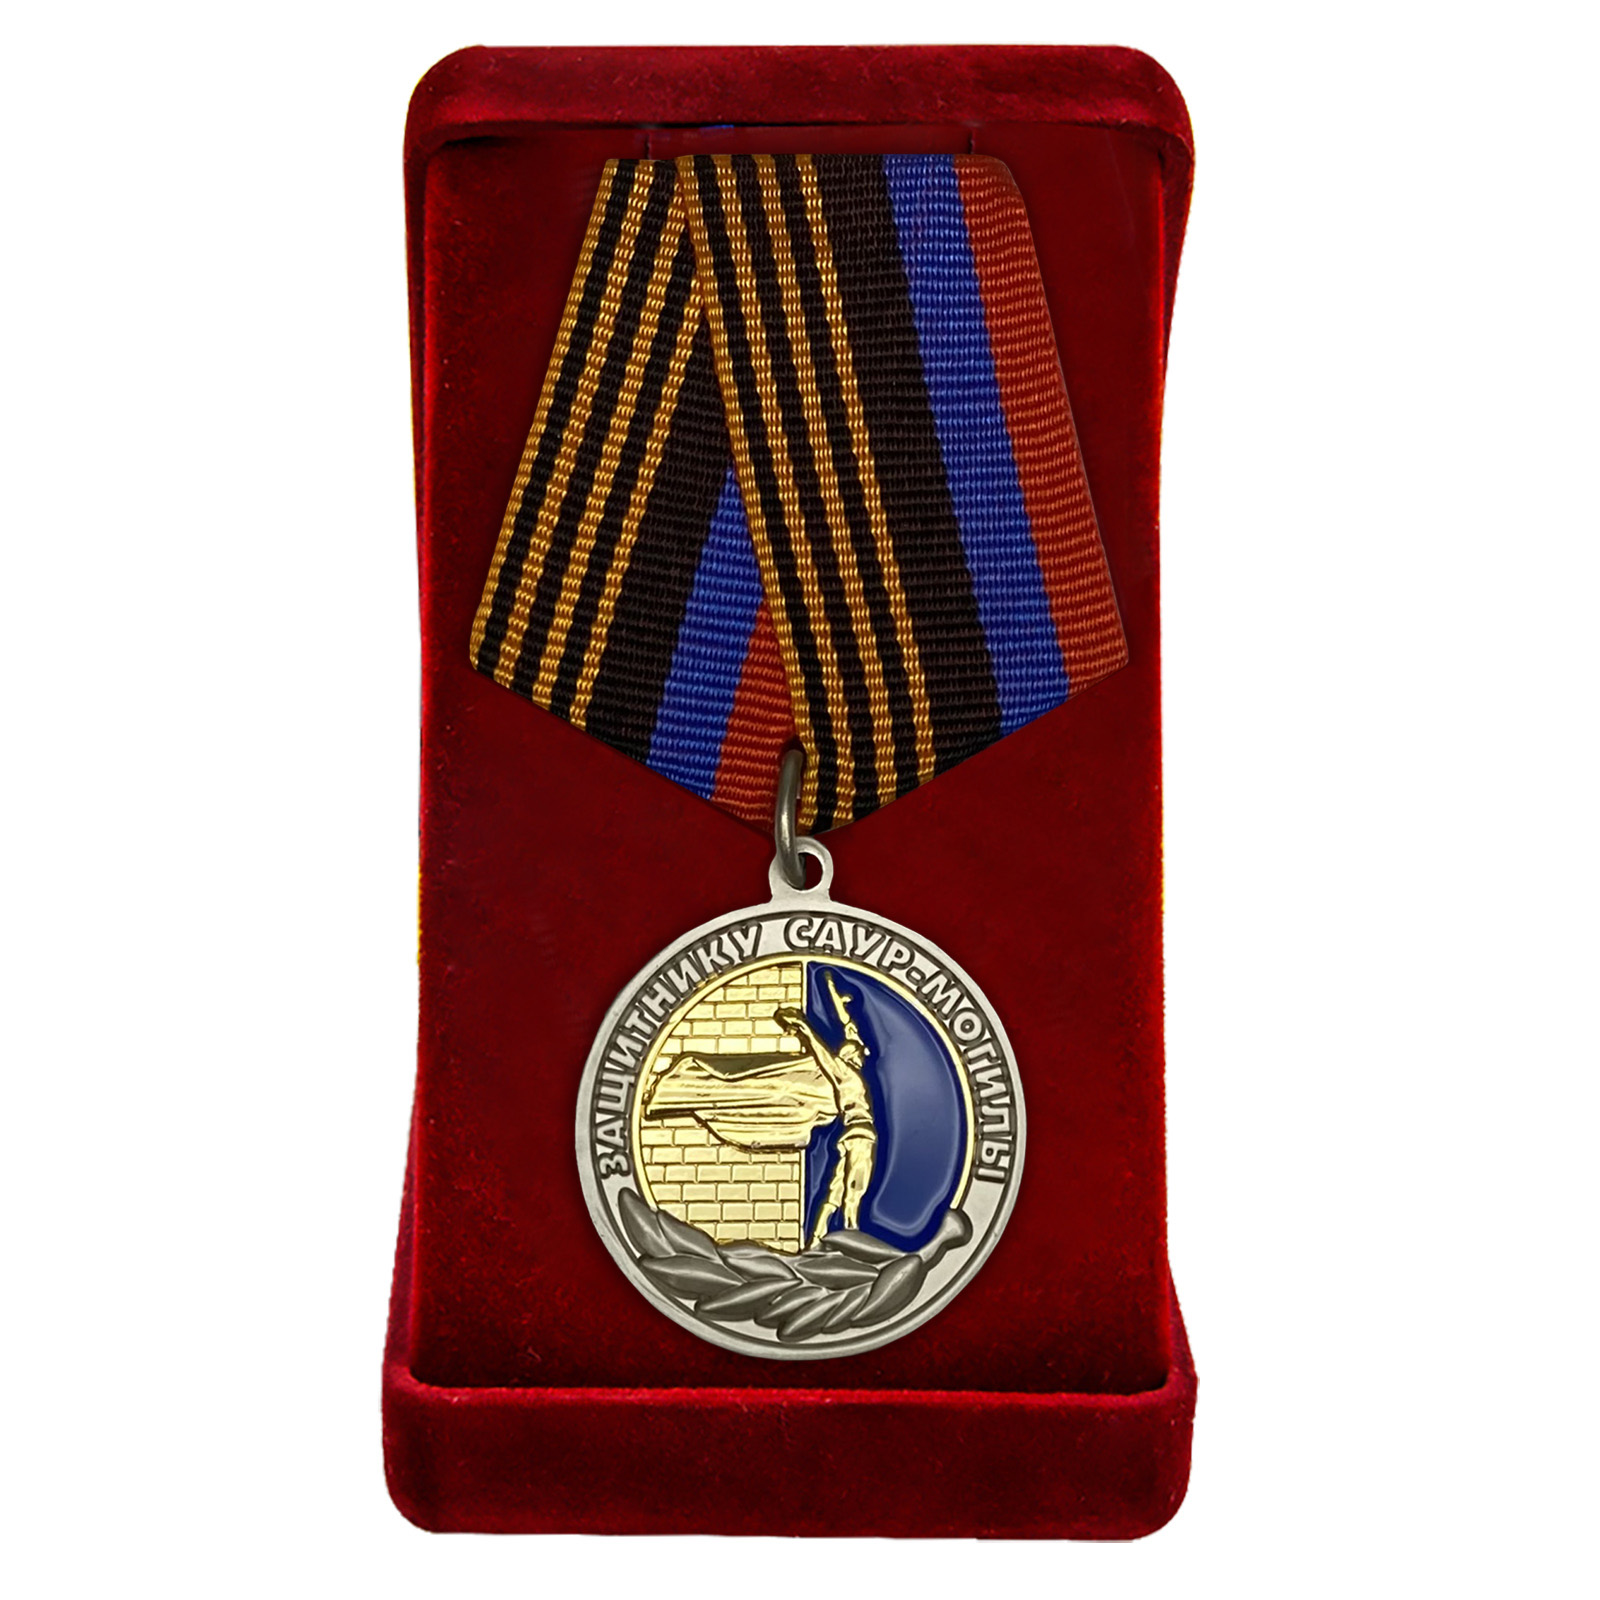 Купить медаль ДНР Защитнику Саур-Могилы онлайн в подарок